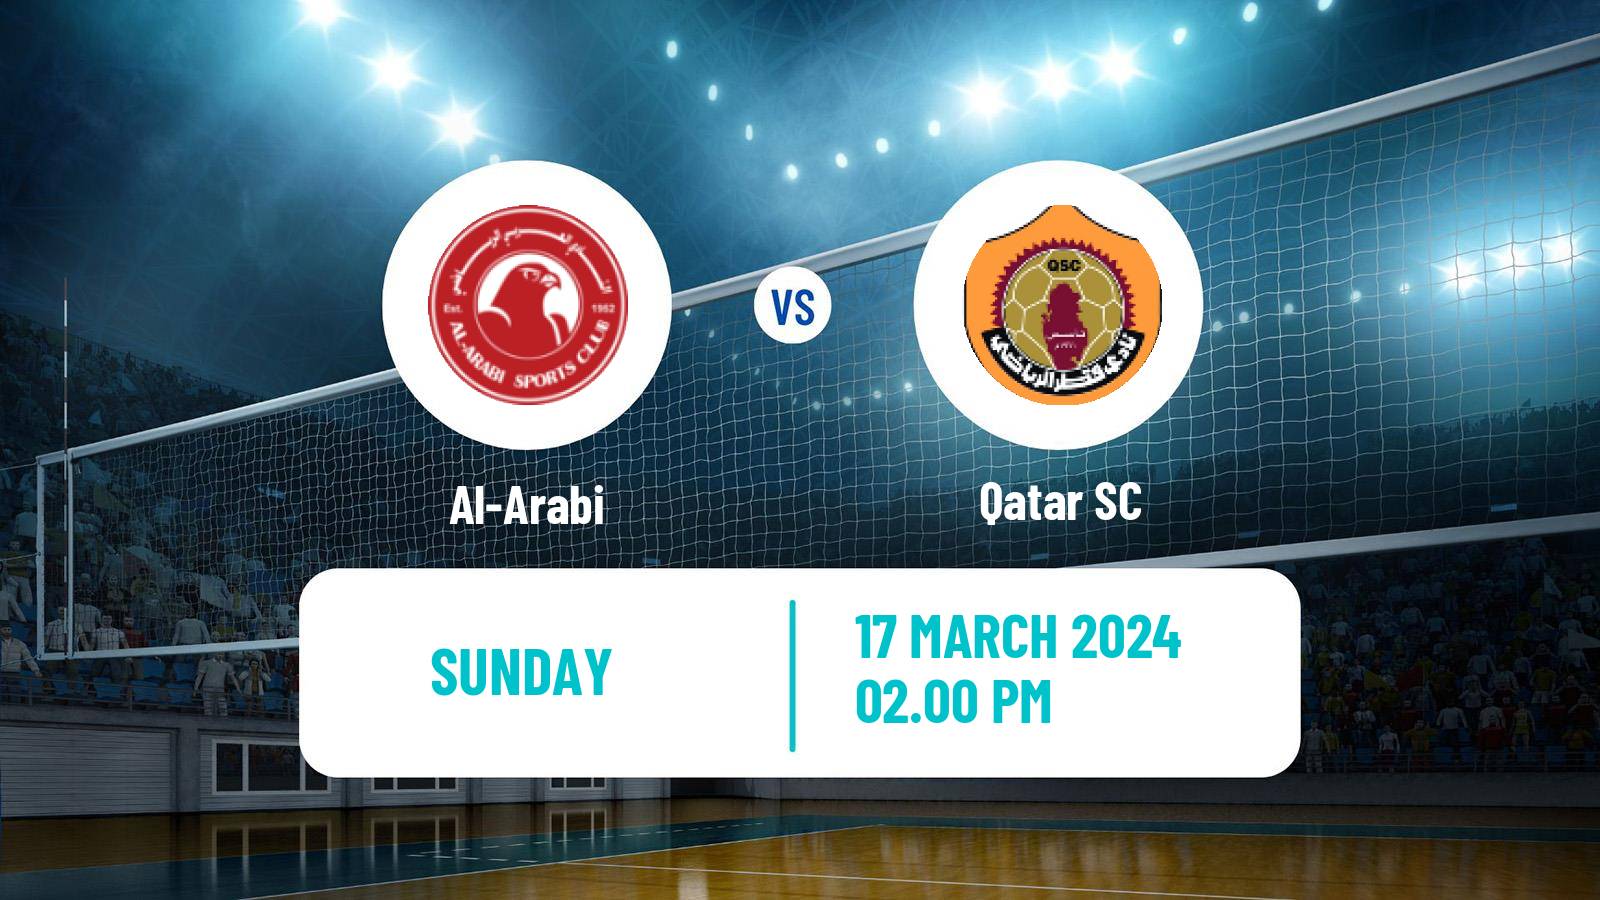 Volleyball Qatar Volleyball League Al-Arabi - Qatar SC